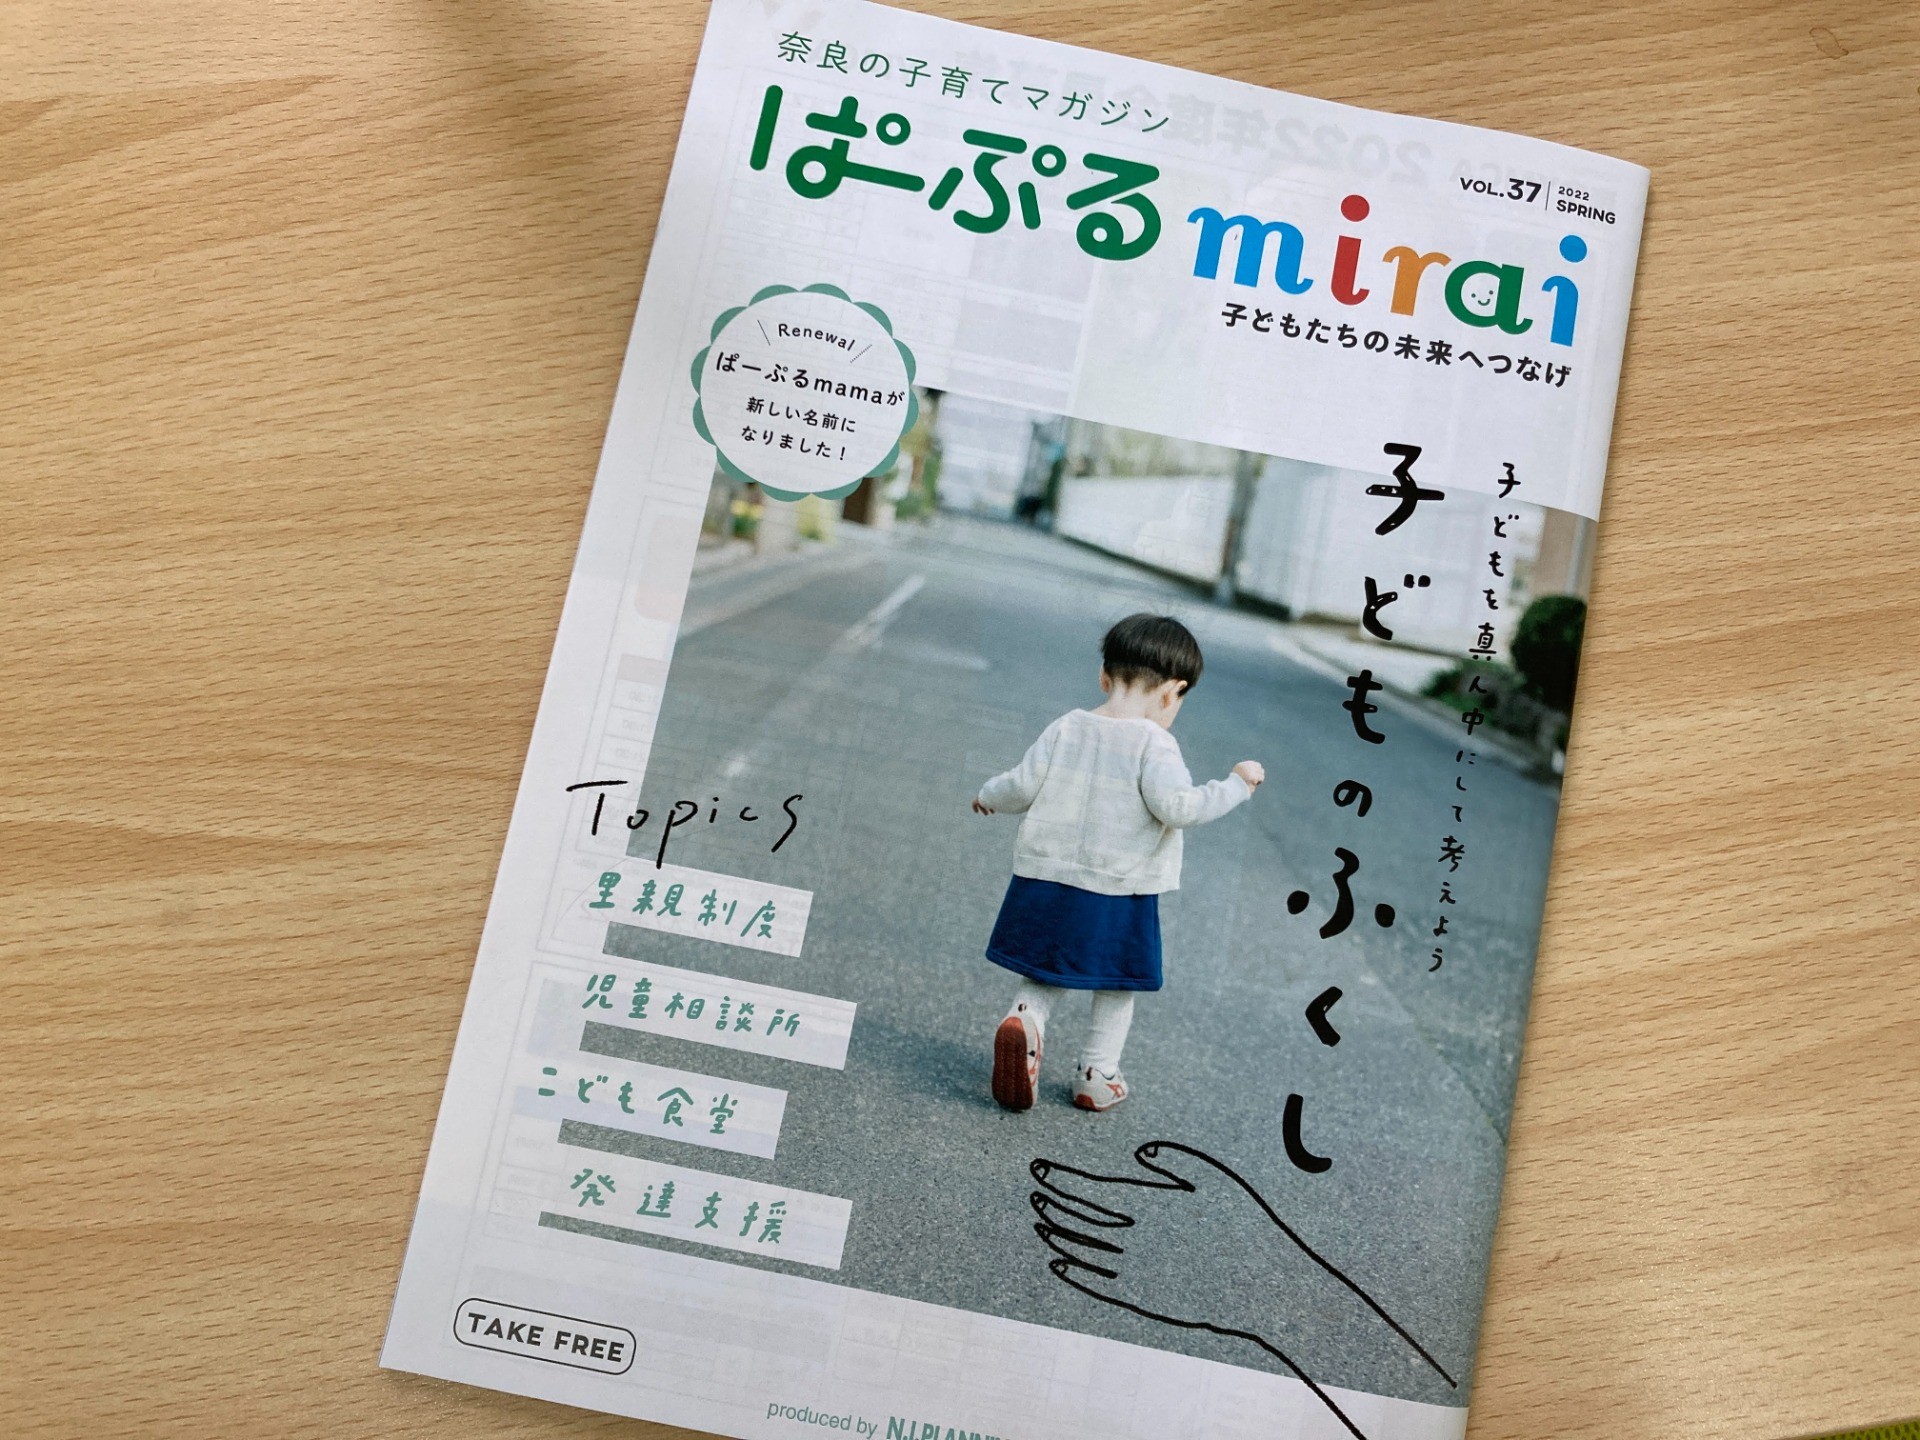 奈良市長との対談記事が掲載されています　奈良の子育てマガジン「ぱーぷるmirai」